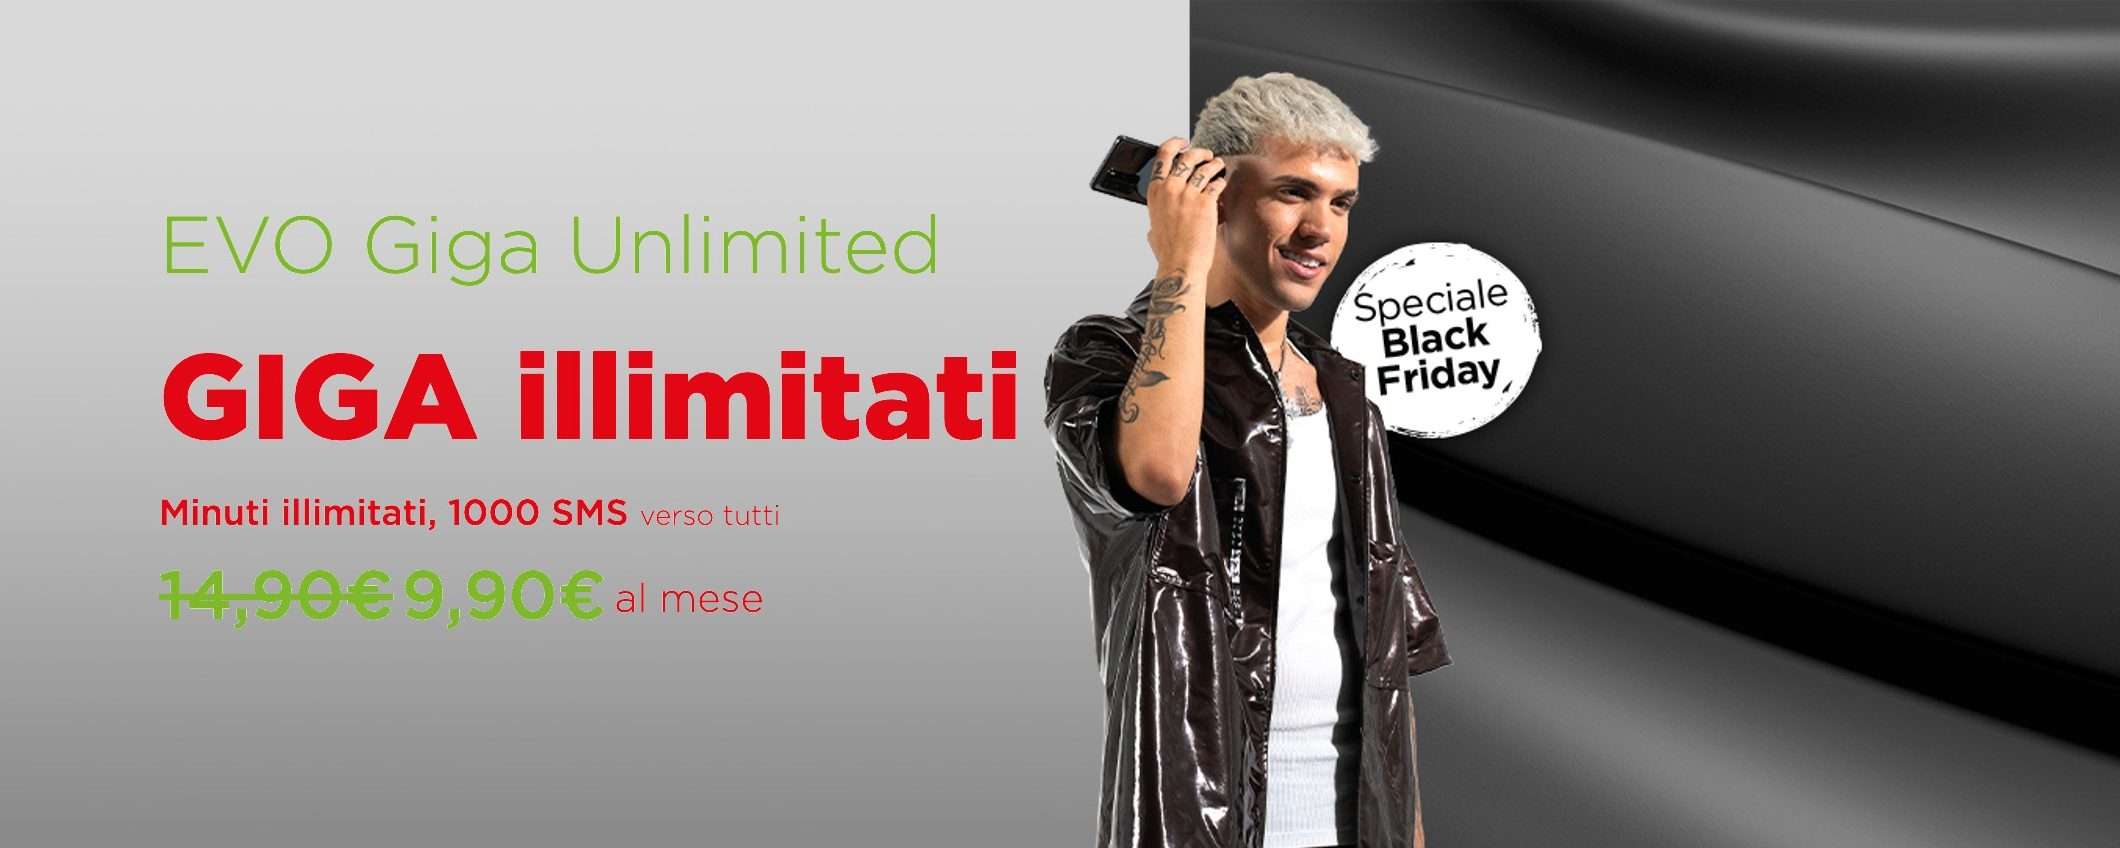 EVO Giga Unlimited: Giga Illimitati a 9,90€ con Coop Voce